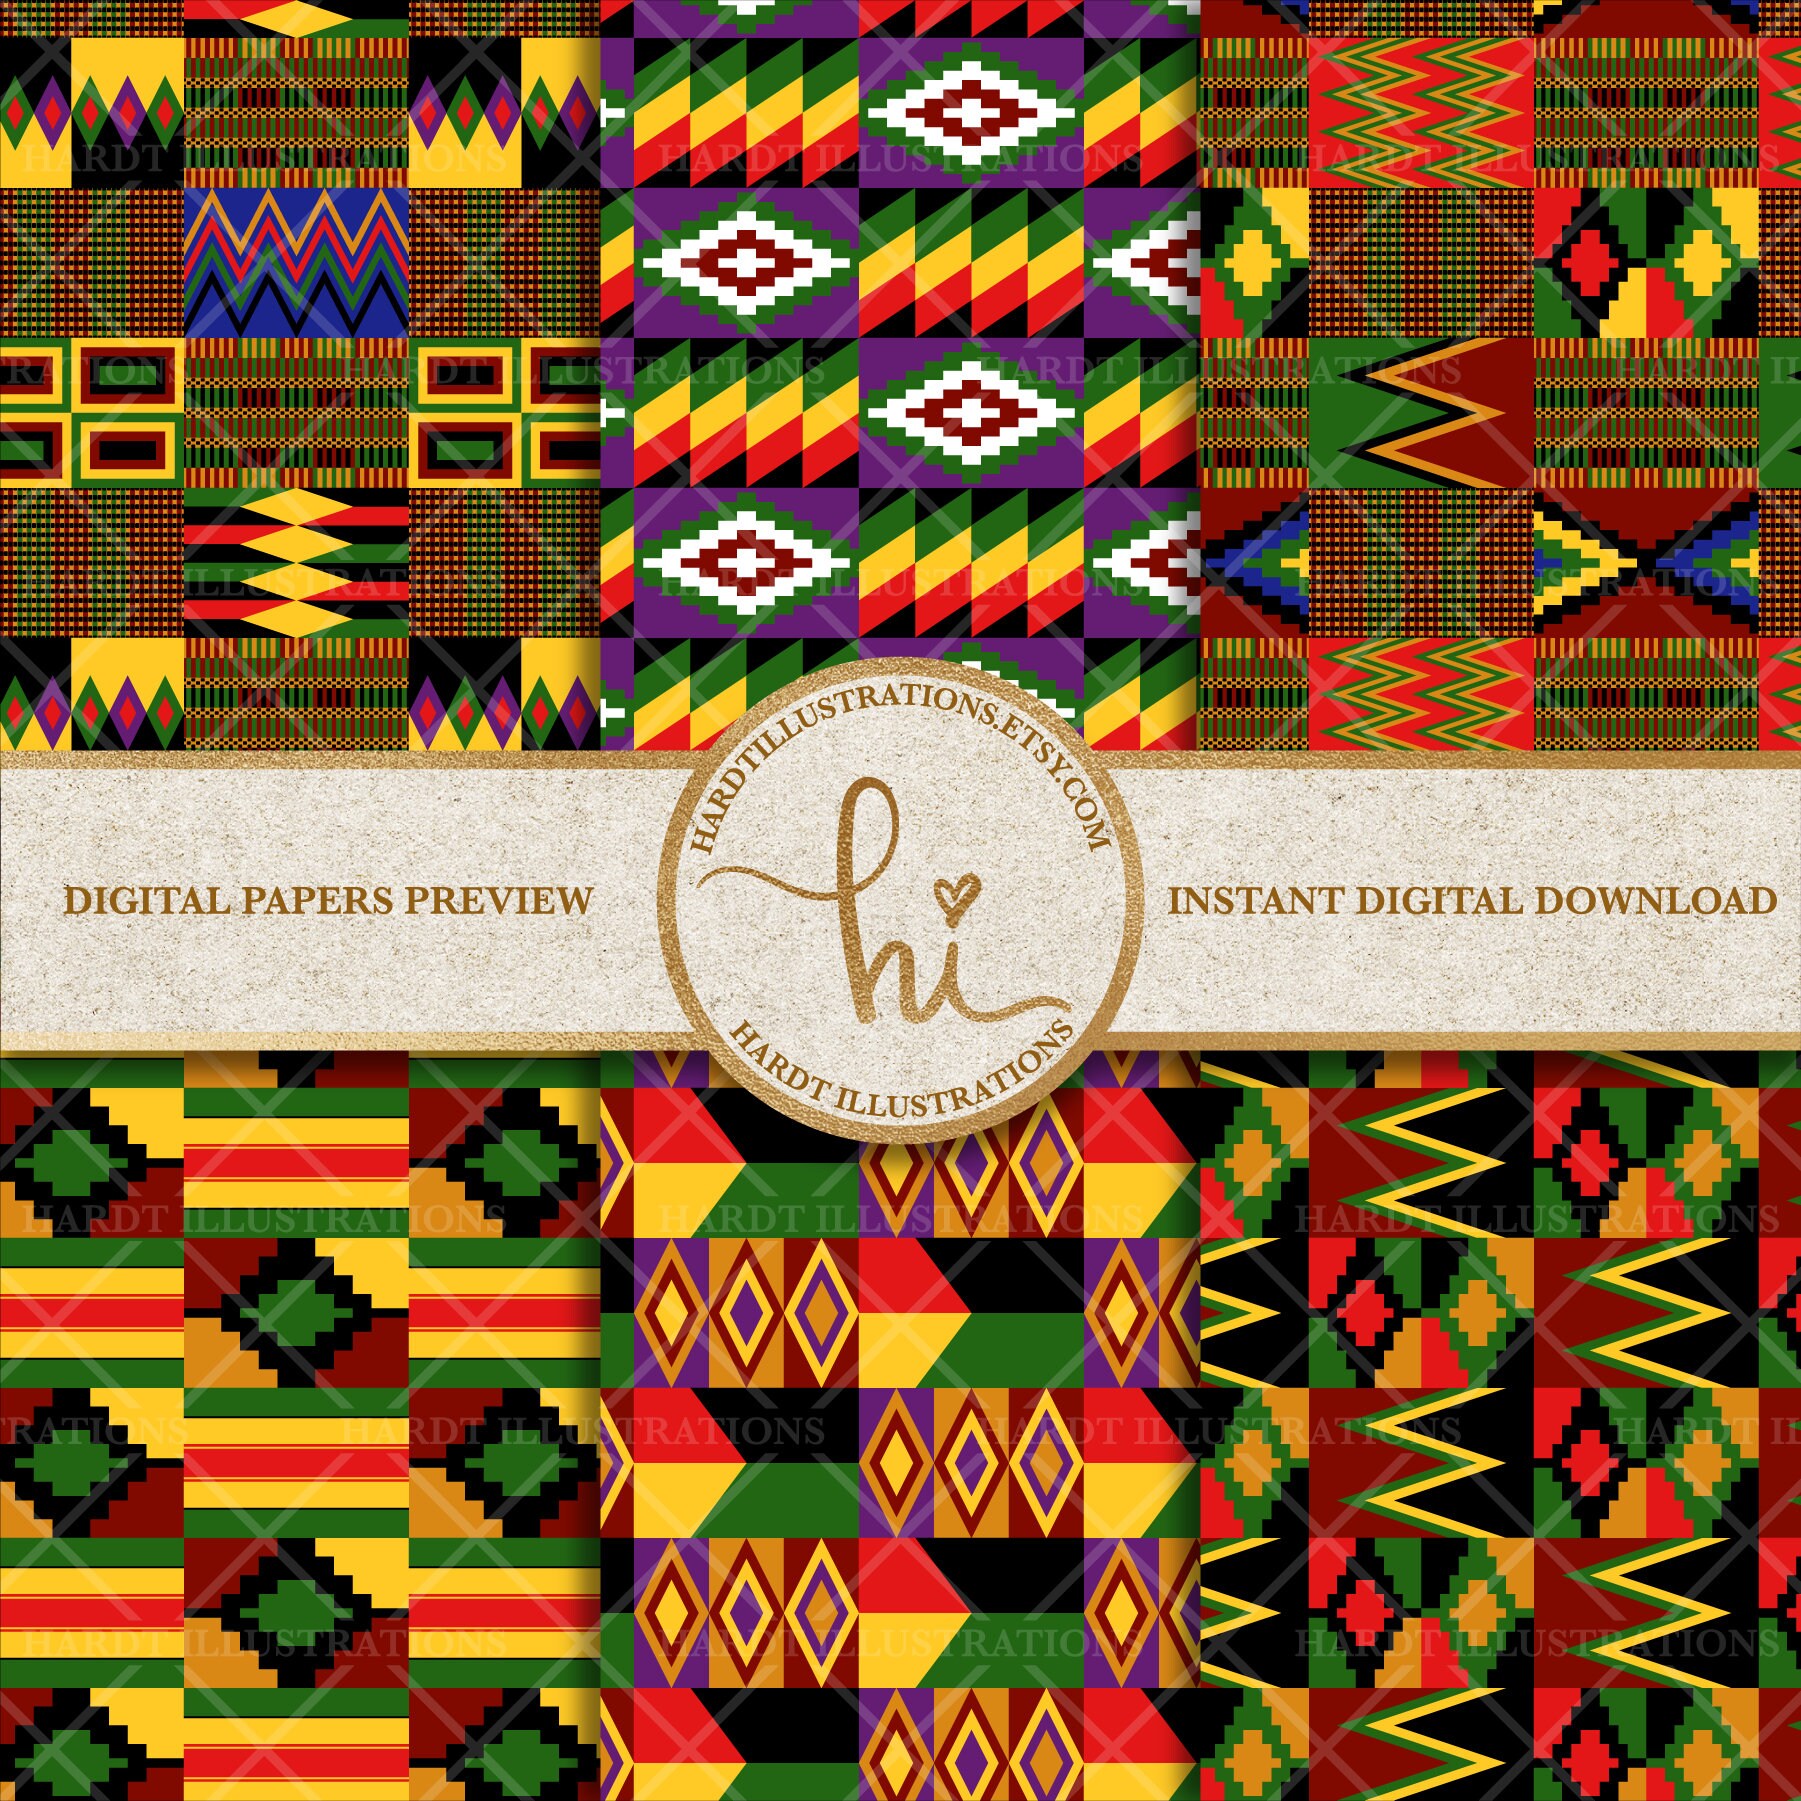 Vải Kente: Vải Kente là một trong những loại vải truyền thống của châu Phi, màu sắc nổi bật và hoa văn phức tạp đầy ý nghĩa. Nhìn vào đó, bạn sẽ có cảm giác như được đưa tới xứ sở của những truyền thống và nghệ thuật đầy màu sắc. Hãy cùng khám phá những điều thú vị về vải Kente nhé!